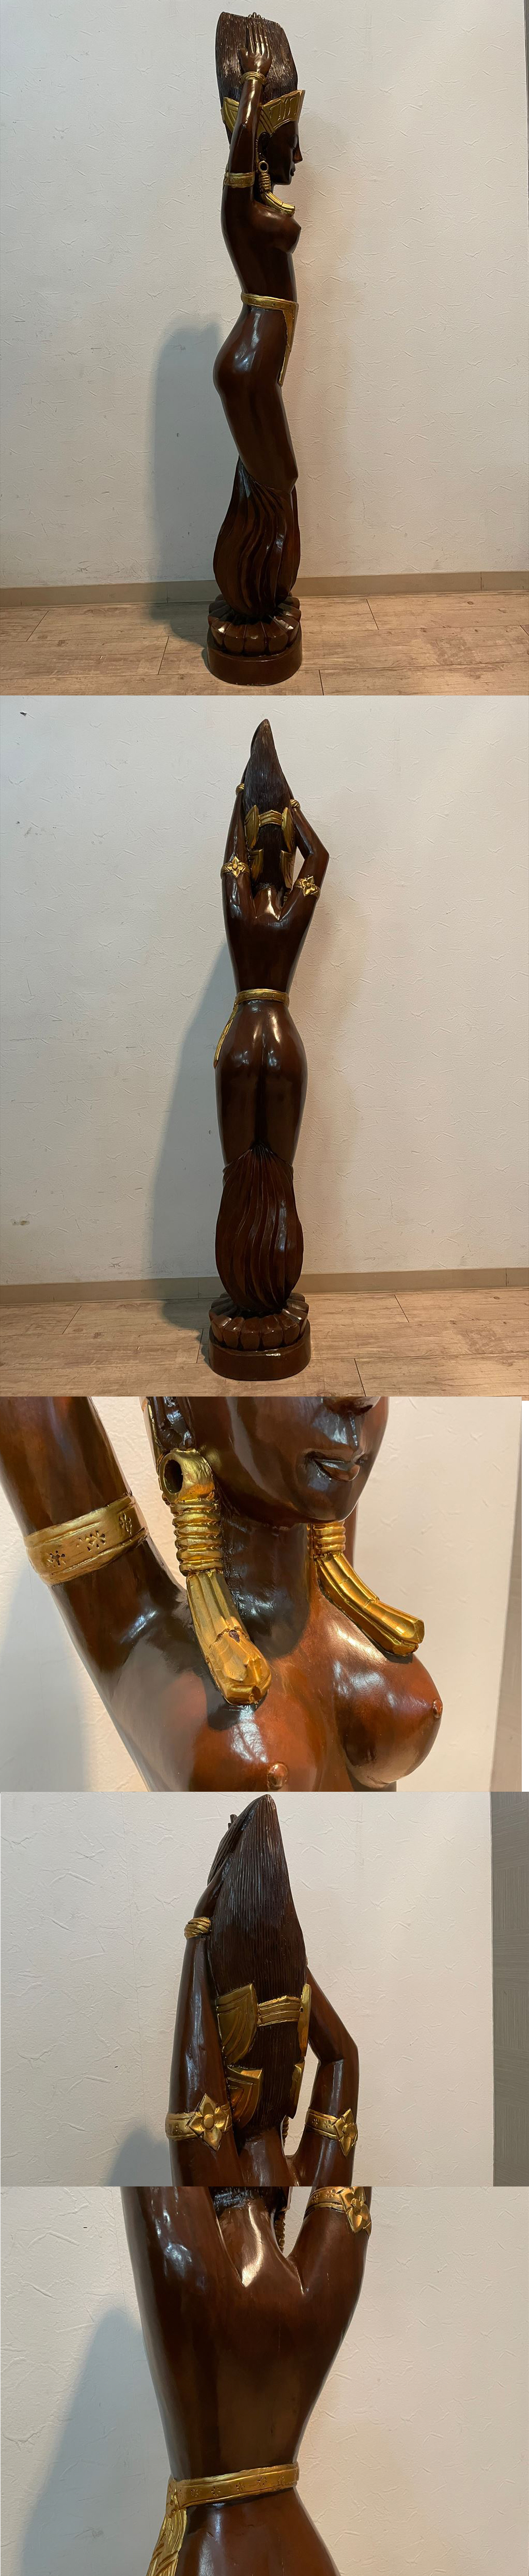 低価豊富な存在感抜群 バリ島 美しい女性像 天然無垢材 幅27cm 高さ150cm 木彫り彫刻 東南アジア 女神像 美人像 人形 置物 オブジェ 民族工芸 オブジェ